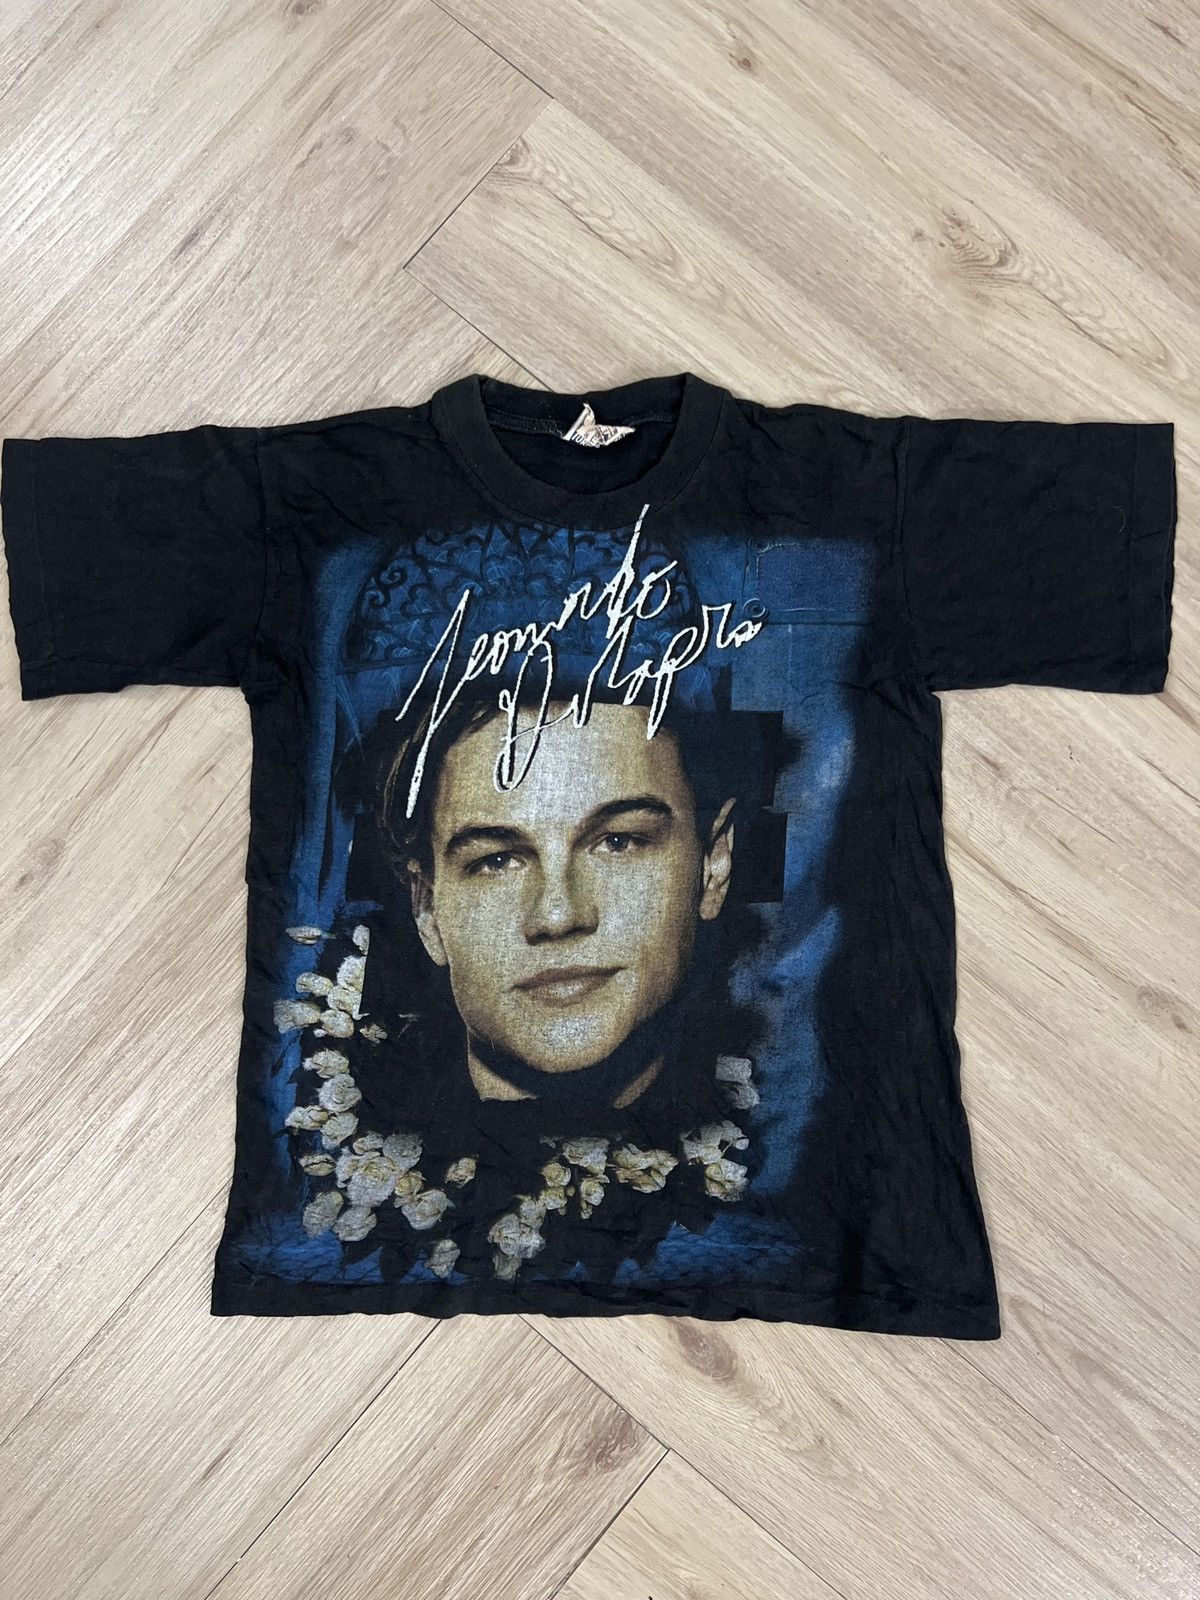 Leonardo Dicaprio Shirt | Grailed